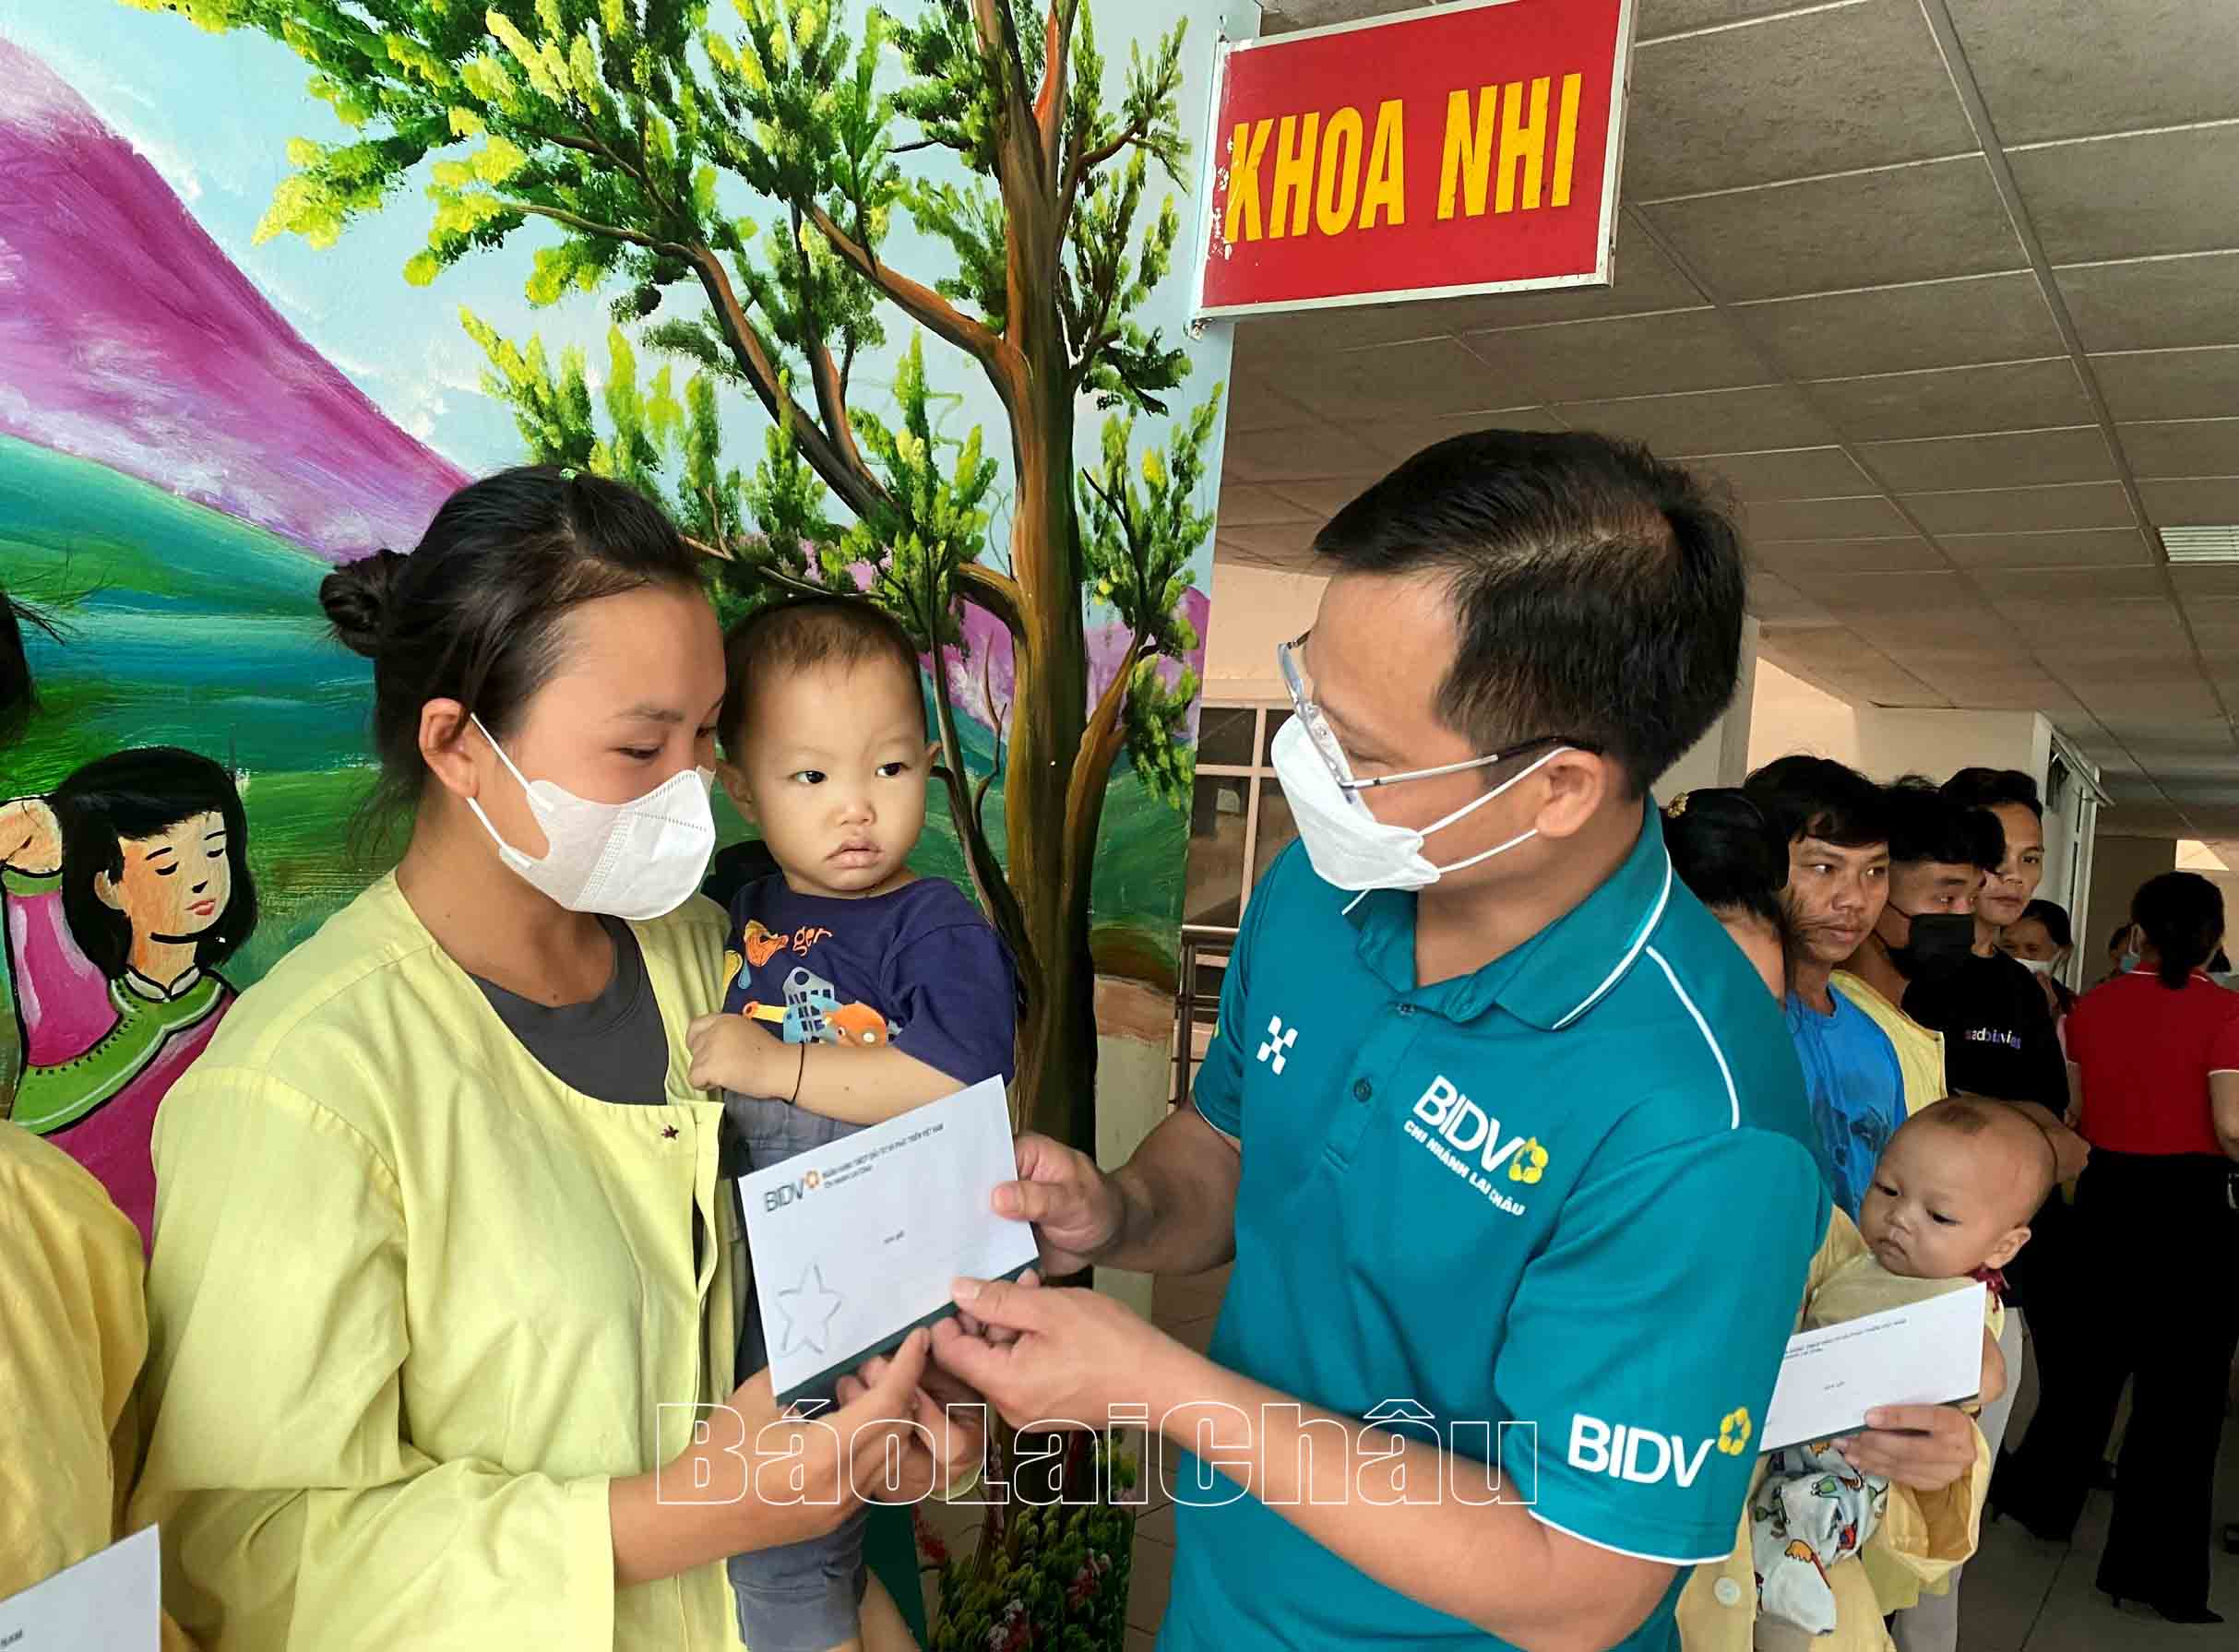 ผู้นำ BIDV Lai Chau มอบของขวัญให้กับเด็กๆ ที่ตกอยู่ในสถานการณ์ที่ยากลำบากที่เข้ารับการรักษาที่โรงพยาบาลทั่วไปประจำจังหวัด